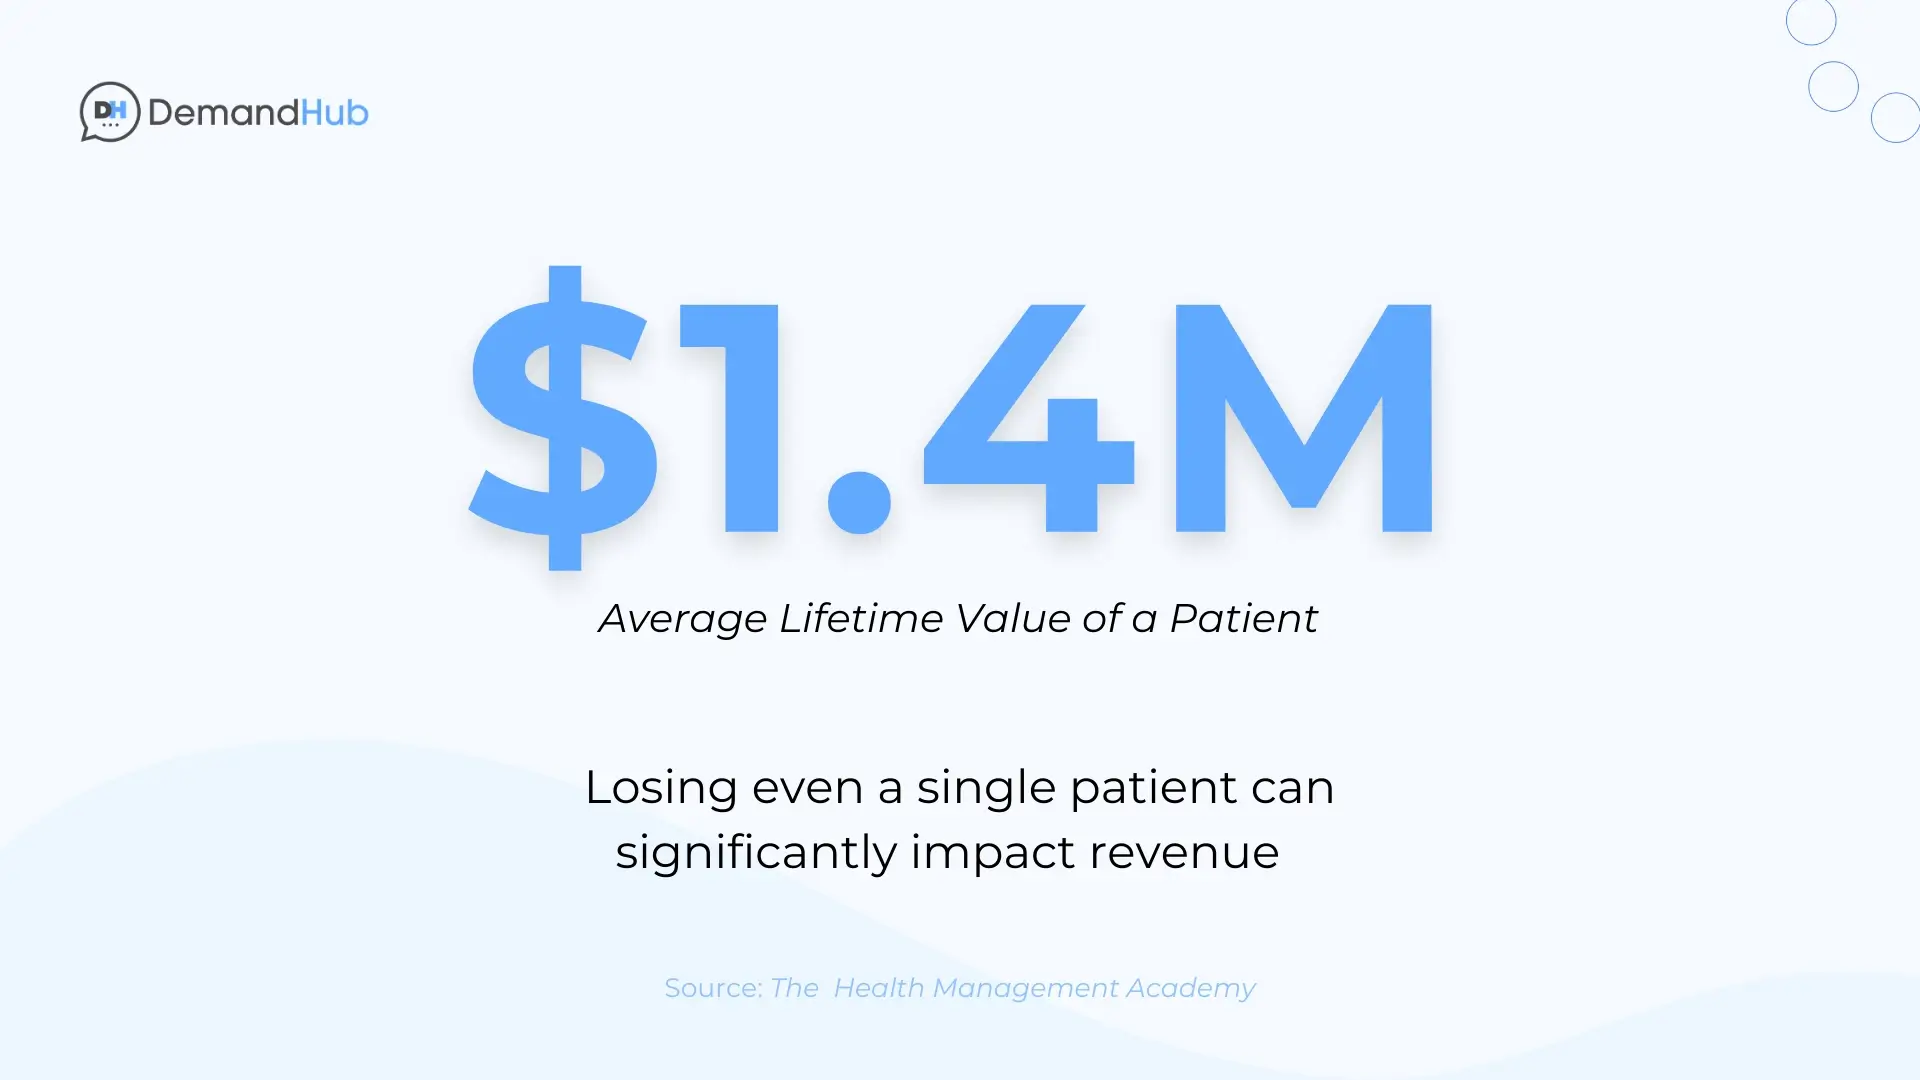 Average lifetime value of a patient